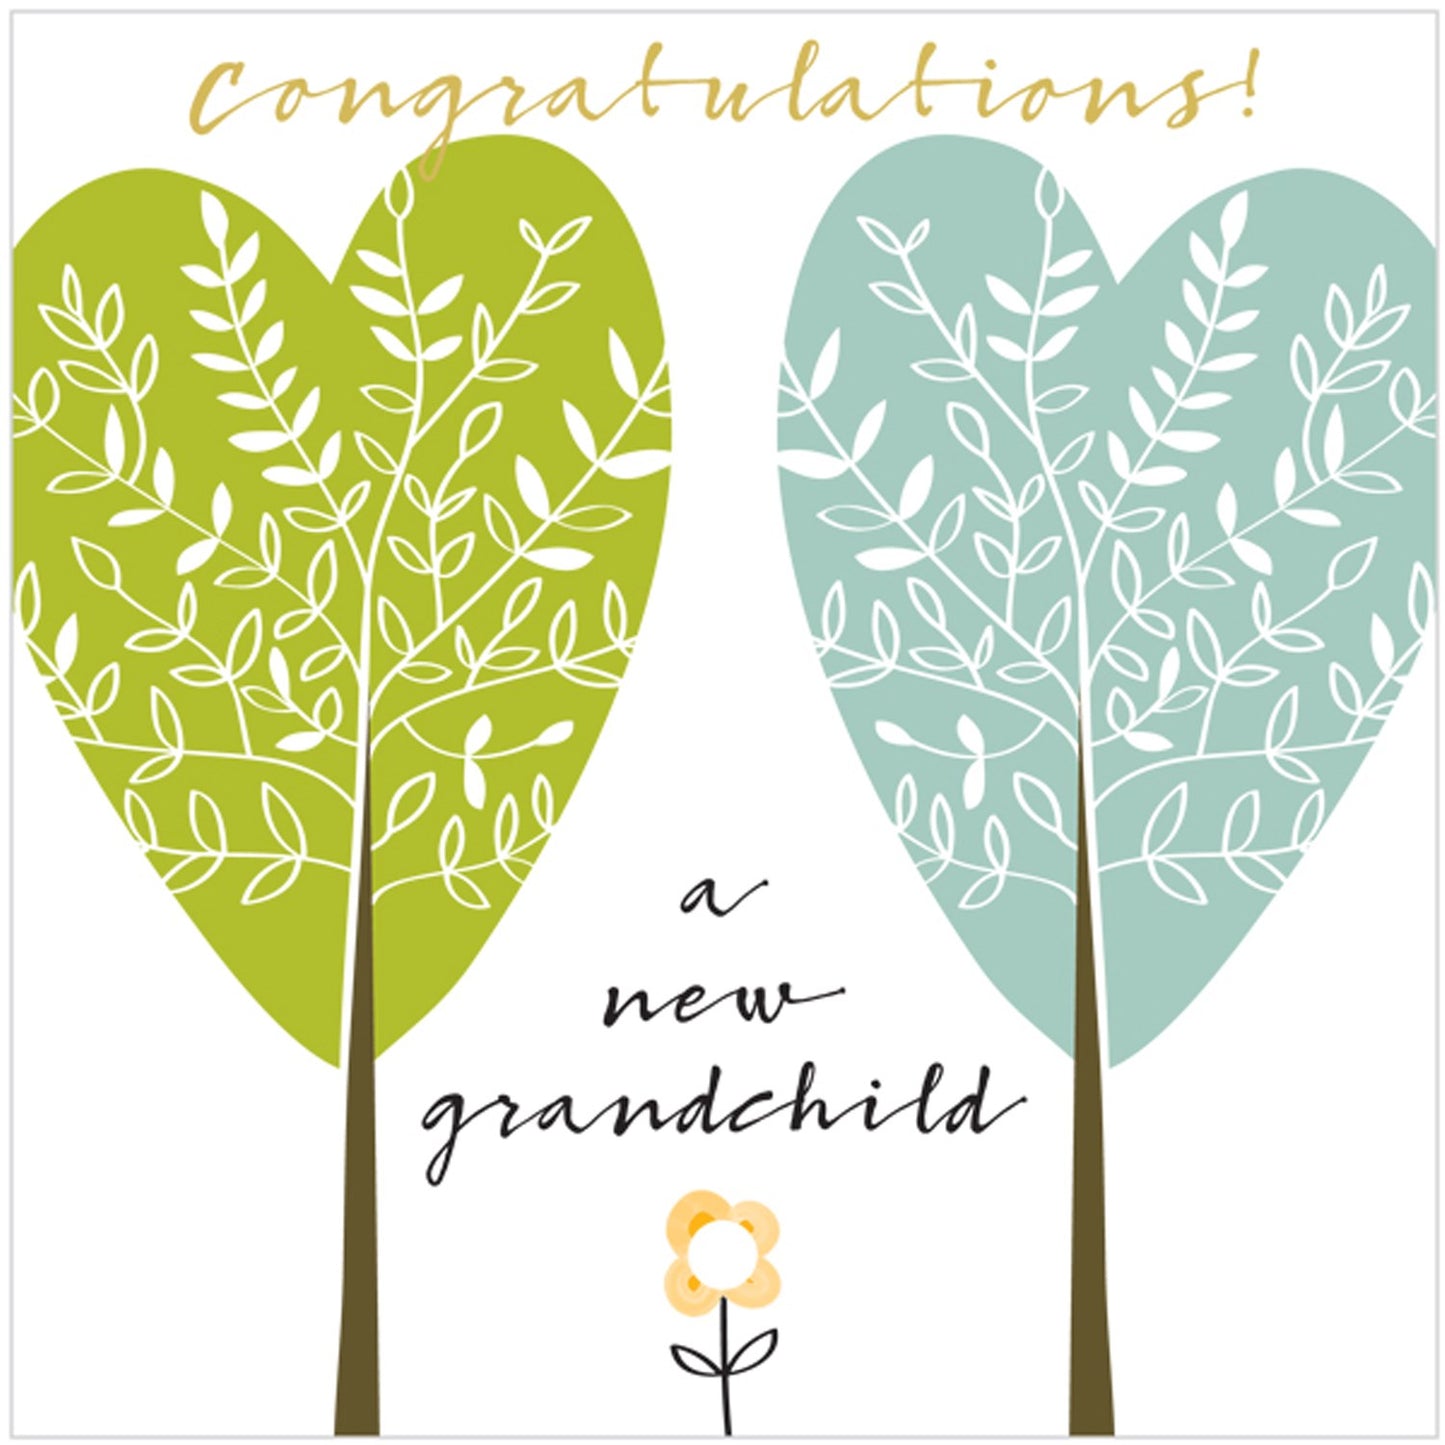 Congratulations! A New Grandchild - Card